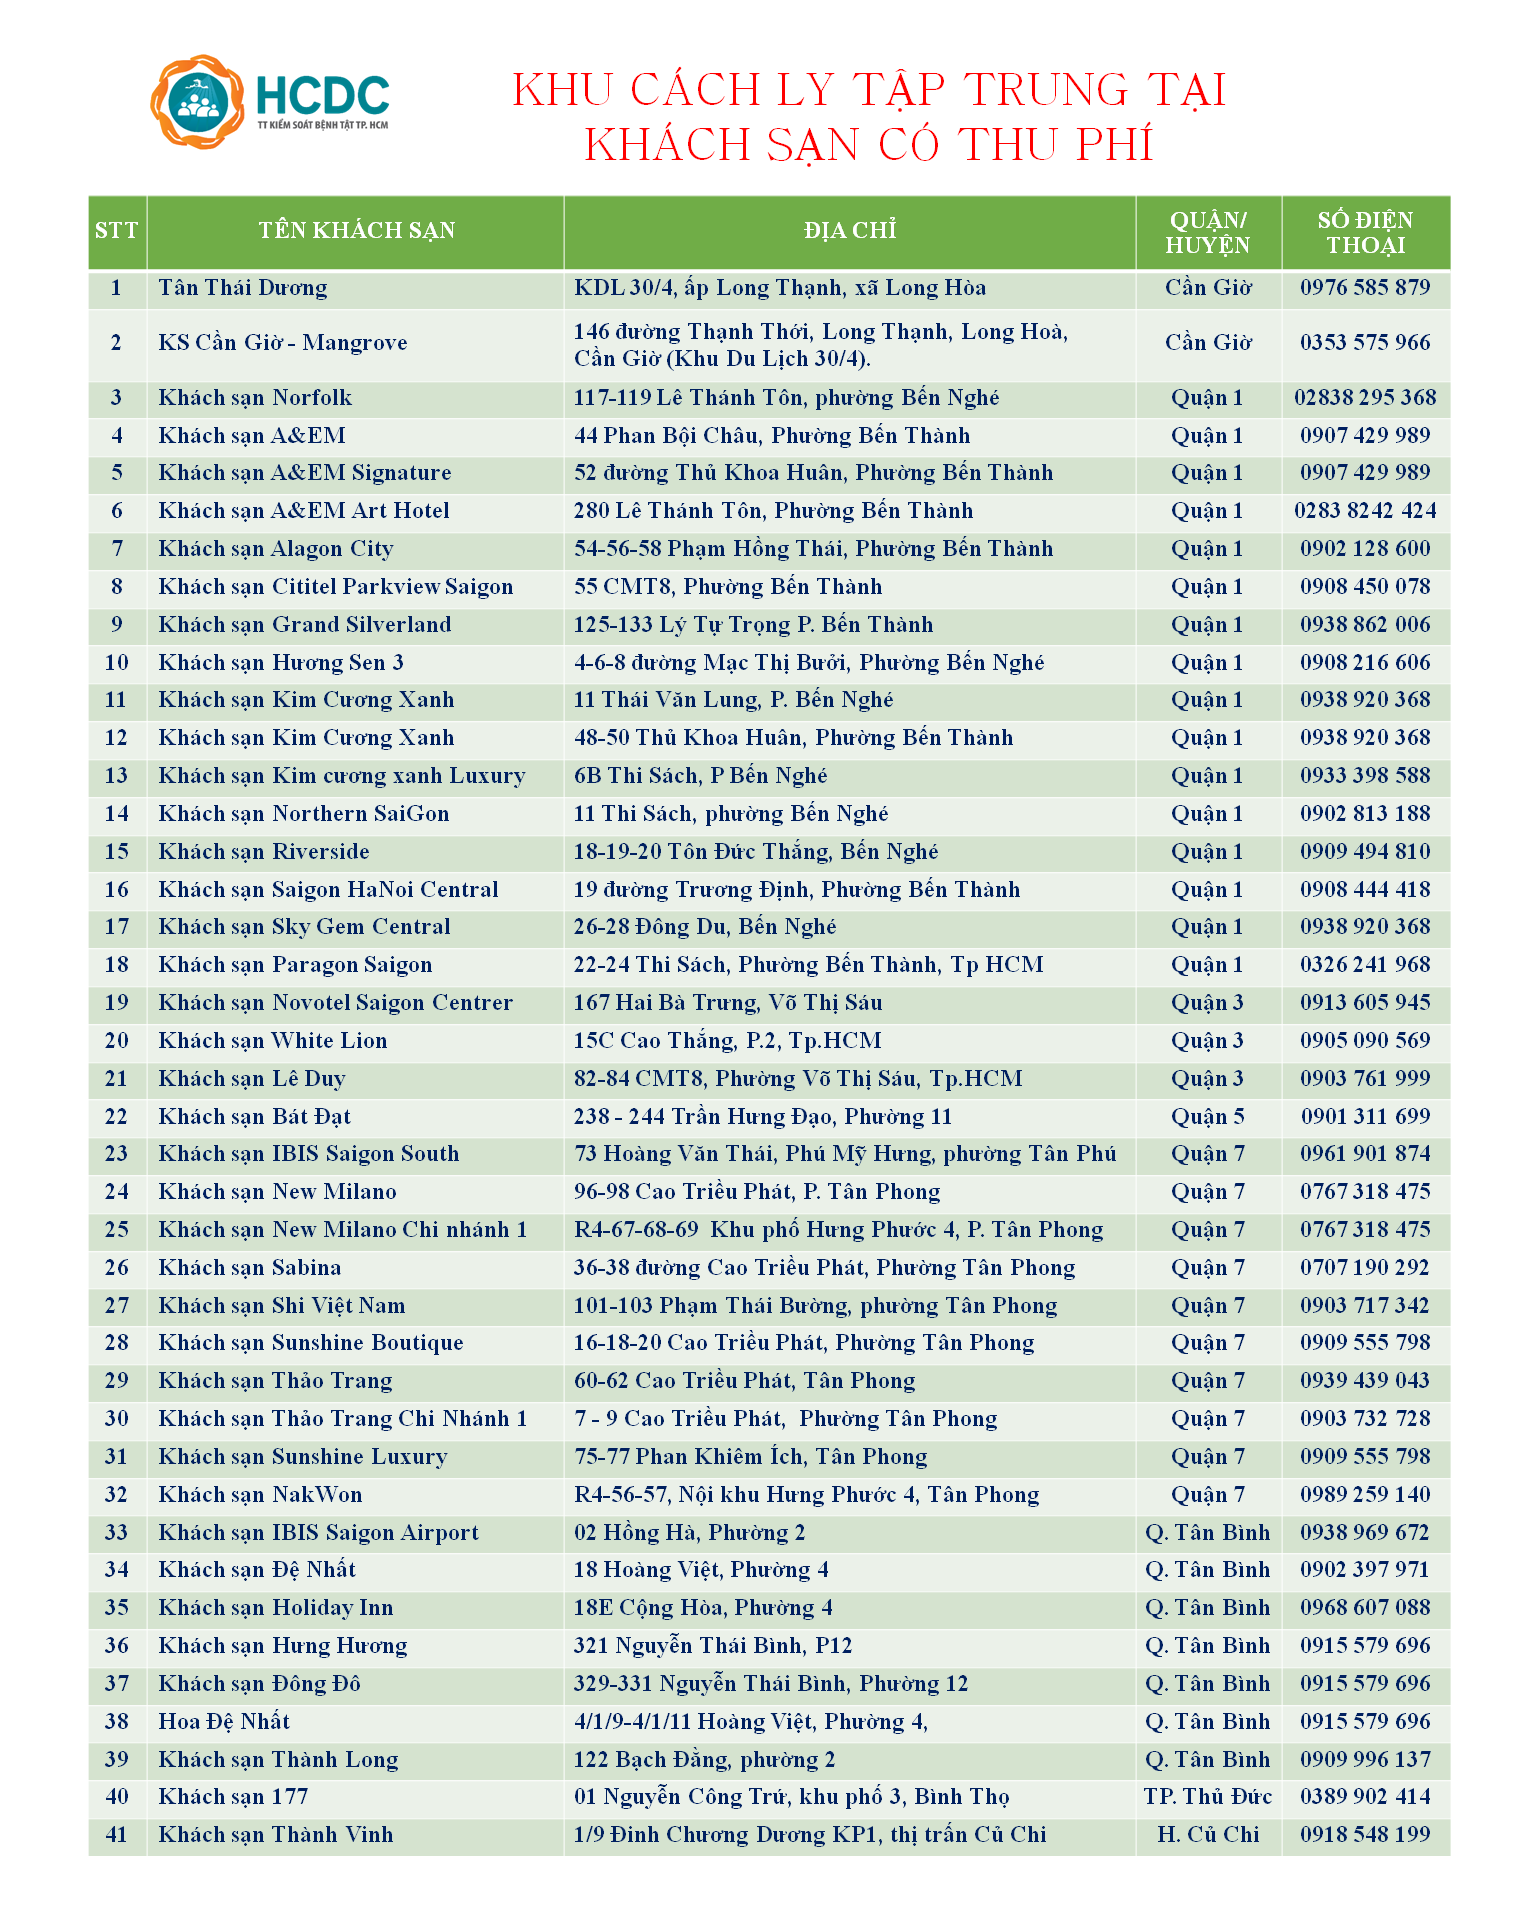 Danh sách 41 khách sạn cách ly tập trung Covid-19 tại TP.HCM - 1